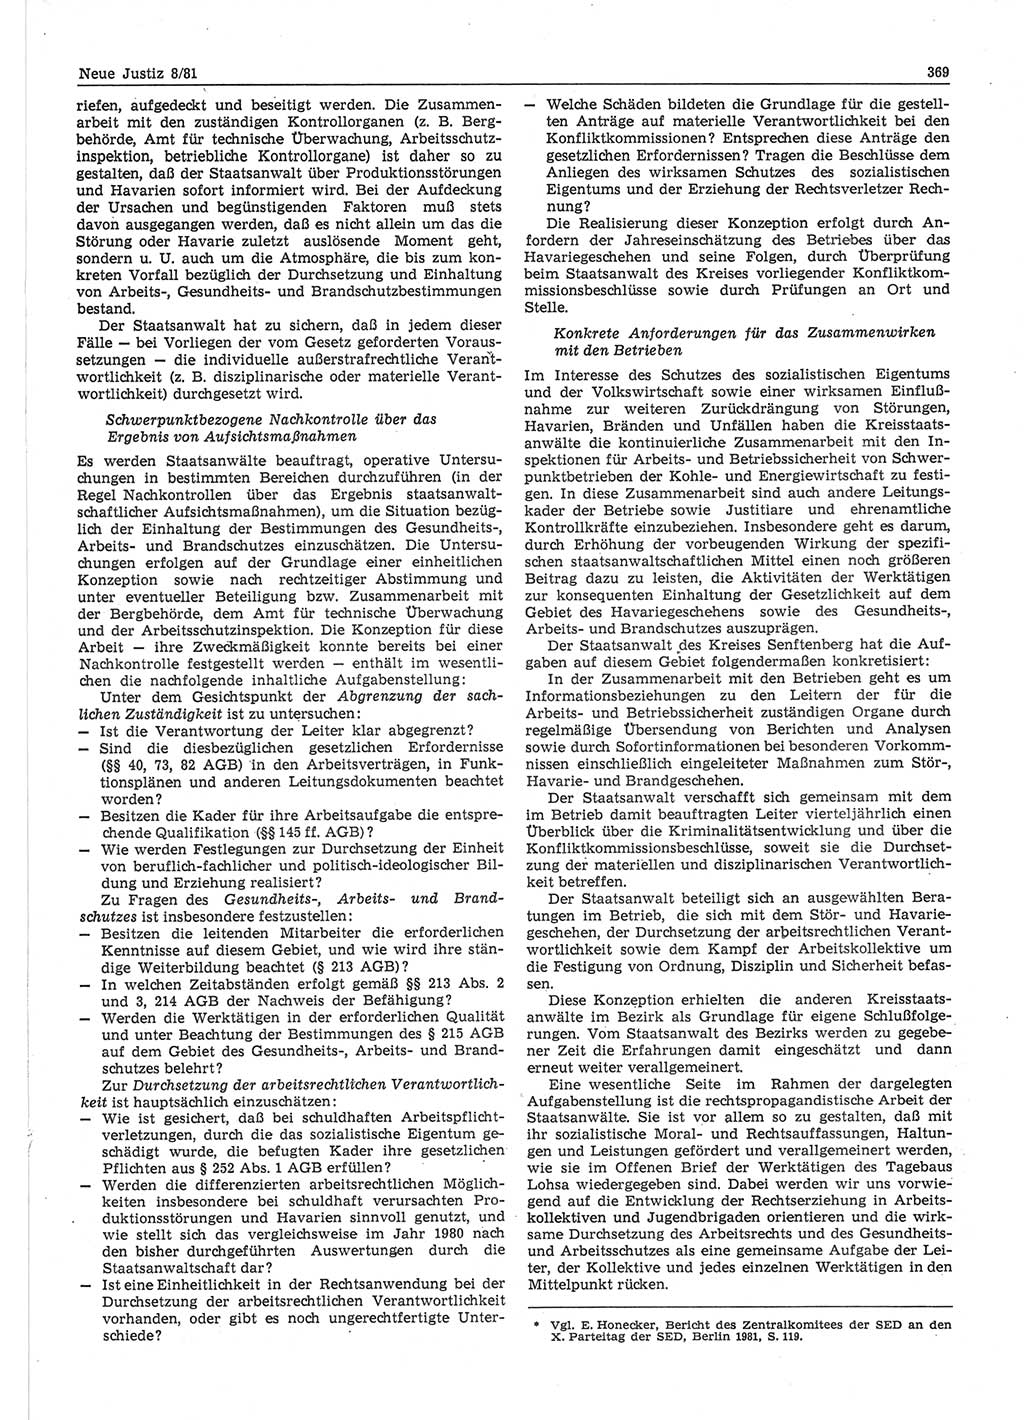 Neue Justiz (NJ), Zeitschrift für sozialistisches Recht und Gesetzlichkeit [Deutsche Demokratische Republik (DDR)], 35. Jahrgang 1981, Seite 369 (NJ DDR 1981, S. 369)